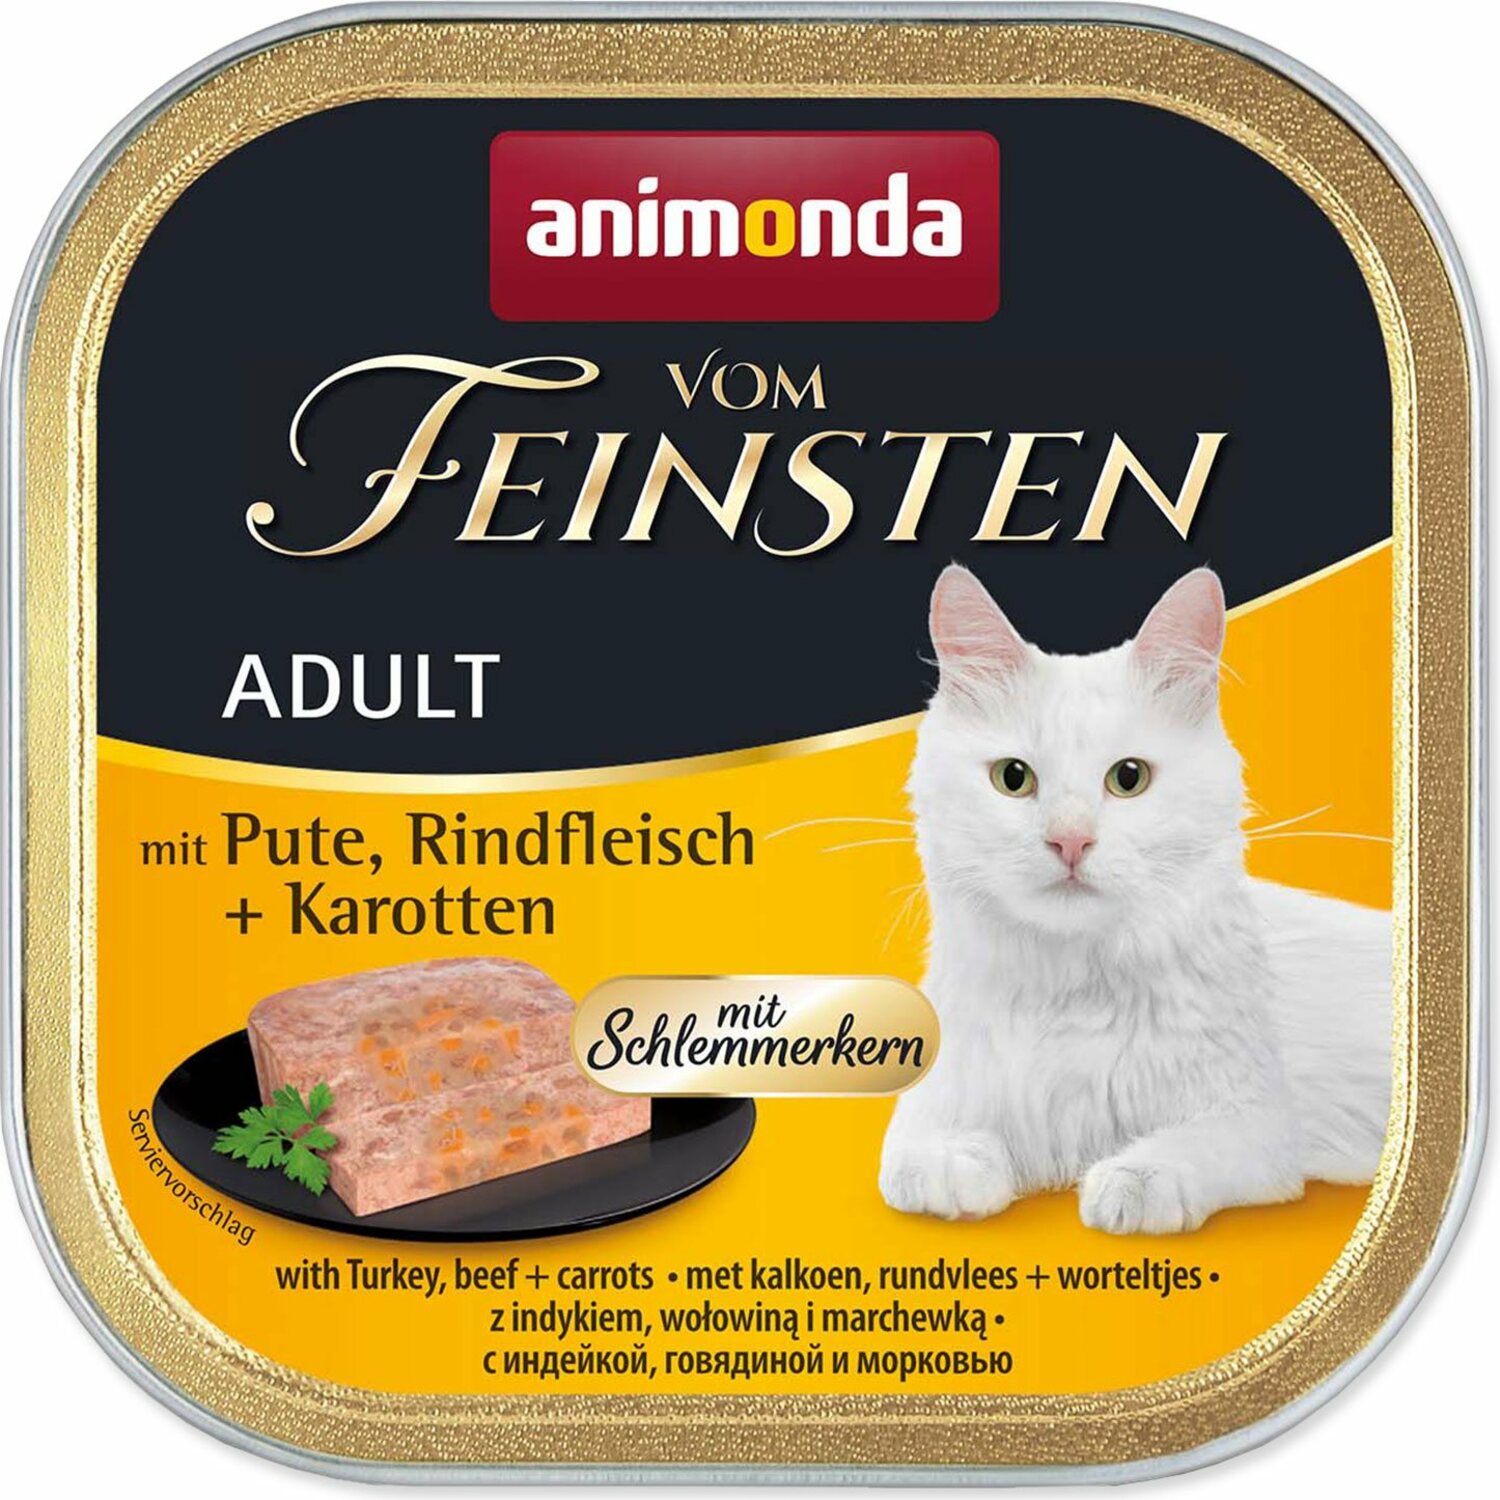 Paštika Animonda Vom Feinstein Adult krůta a hovězí s mrkví 100g